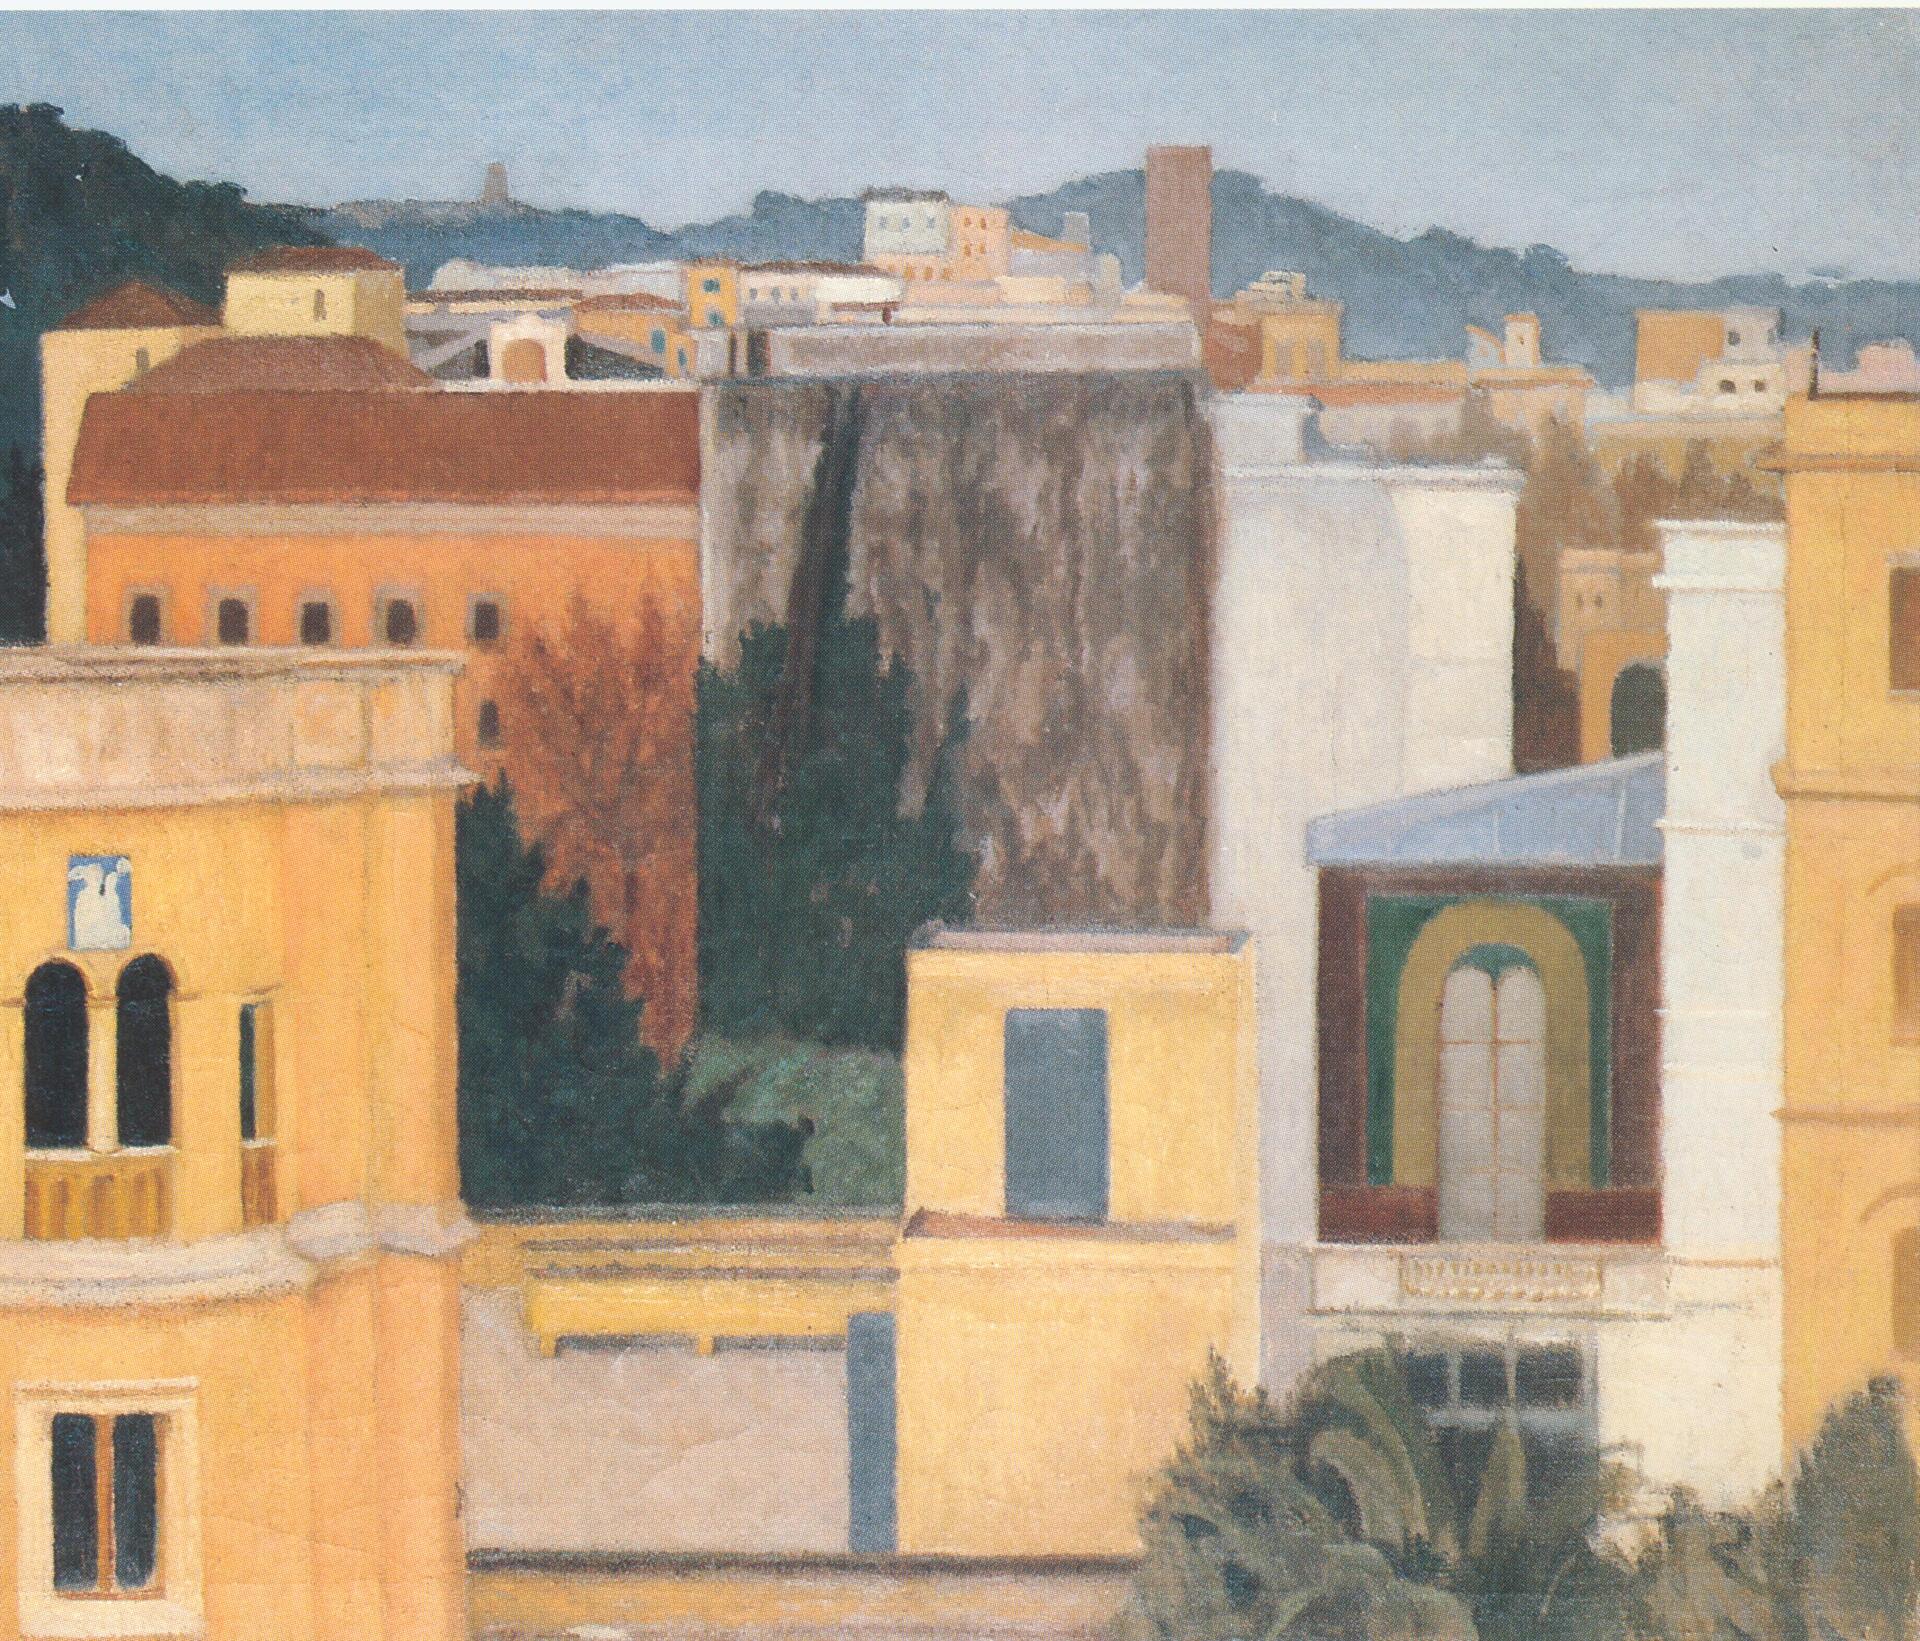 Giuseppe Capogrossi: Paesaggio invernale, 1935, olio su tela - Collezione UniCredit